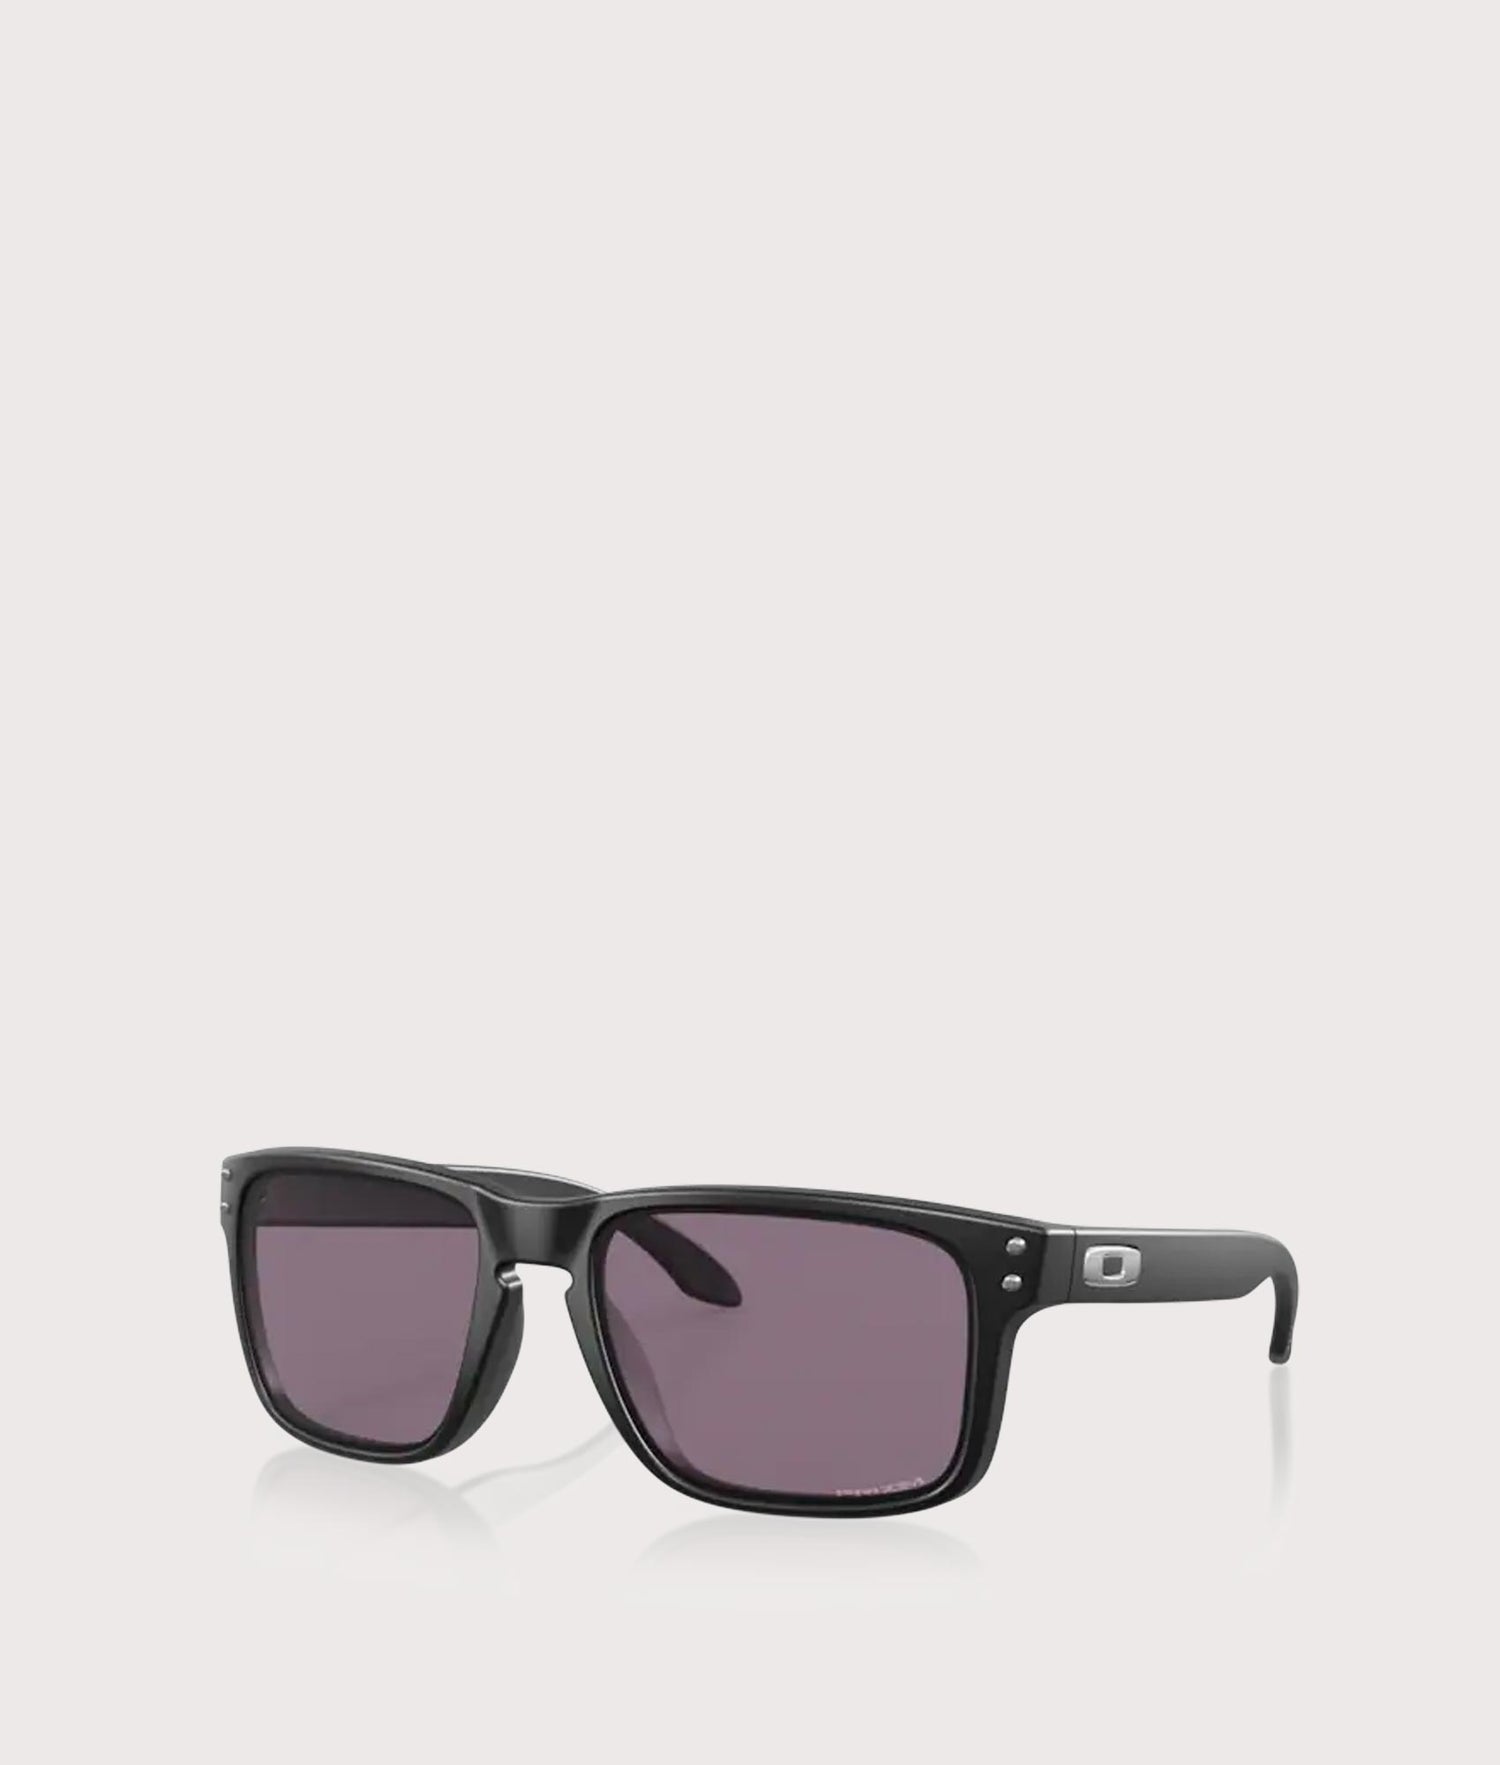 Oakley Fuel Cell Sunglasses Matte Black/Grey Polarized (OO9096-05) Men's -  US